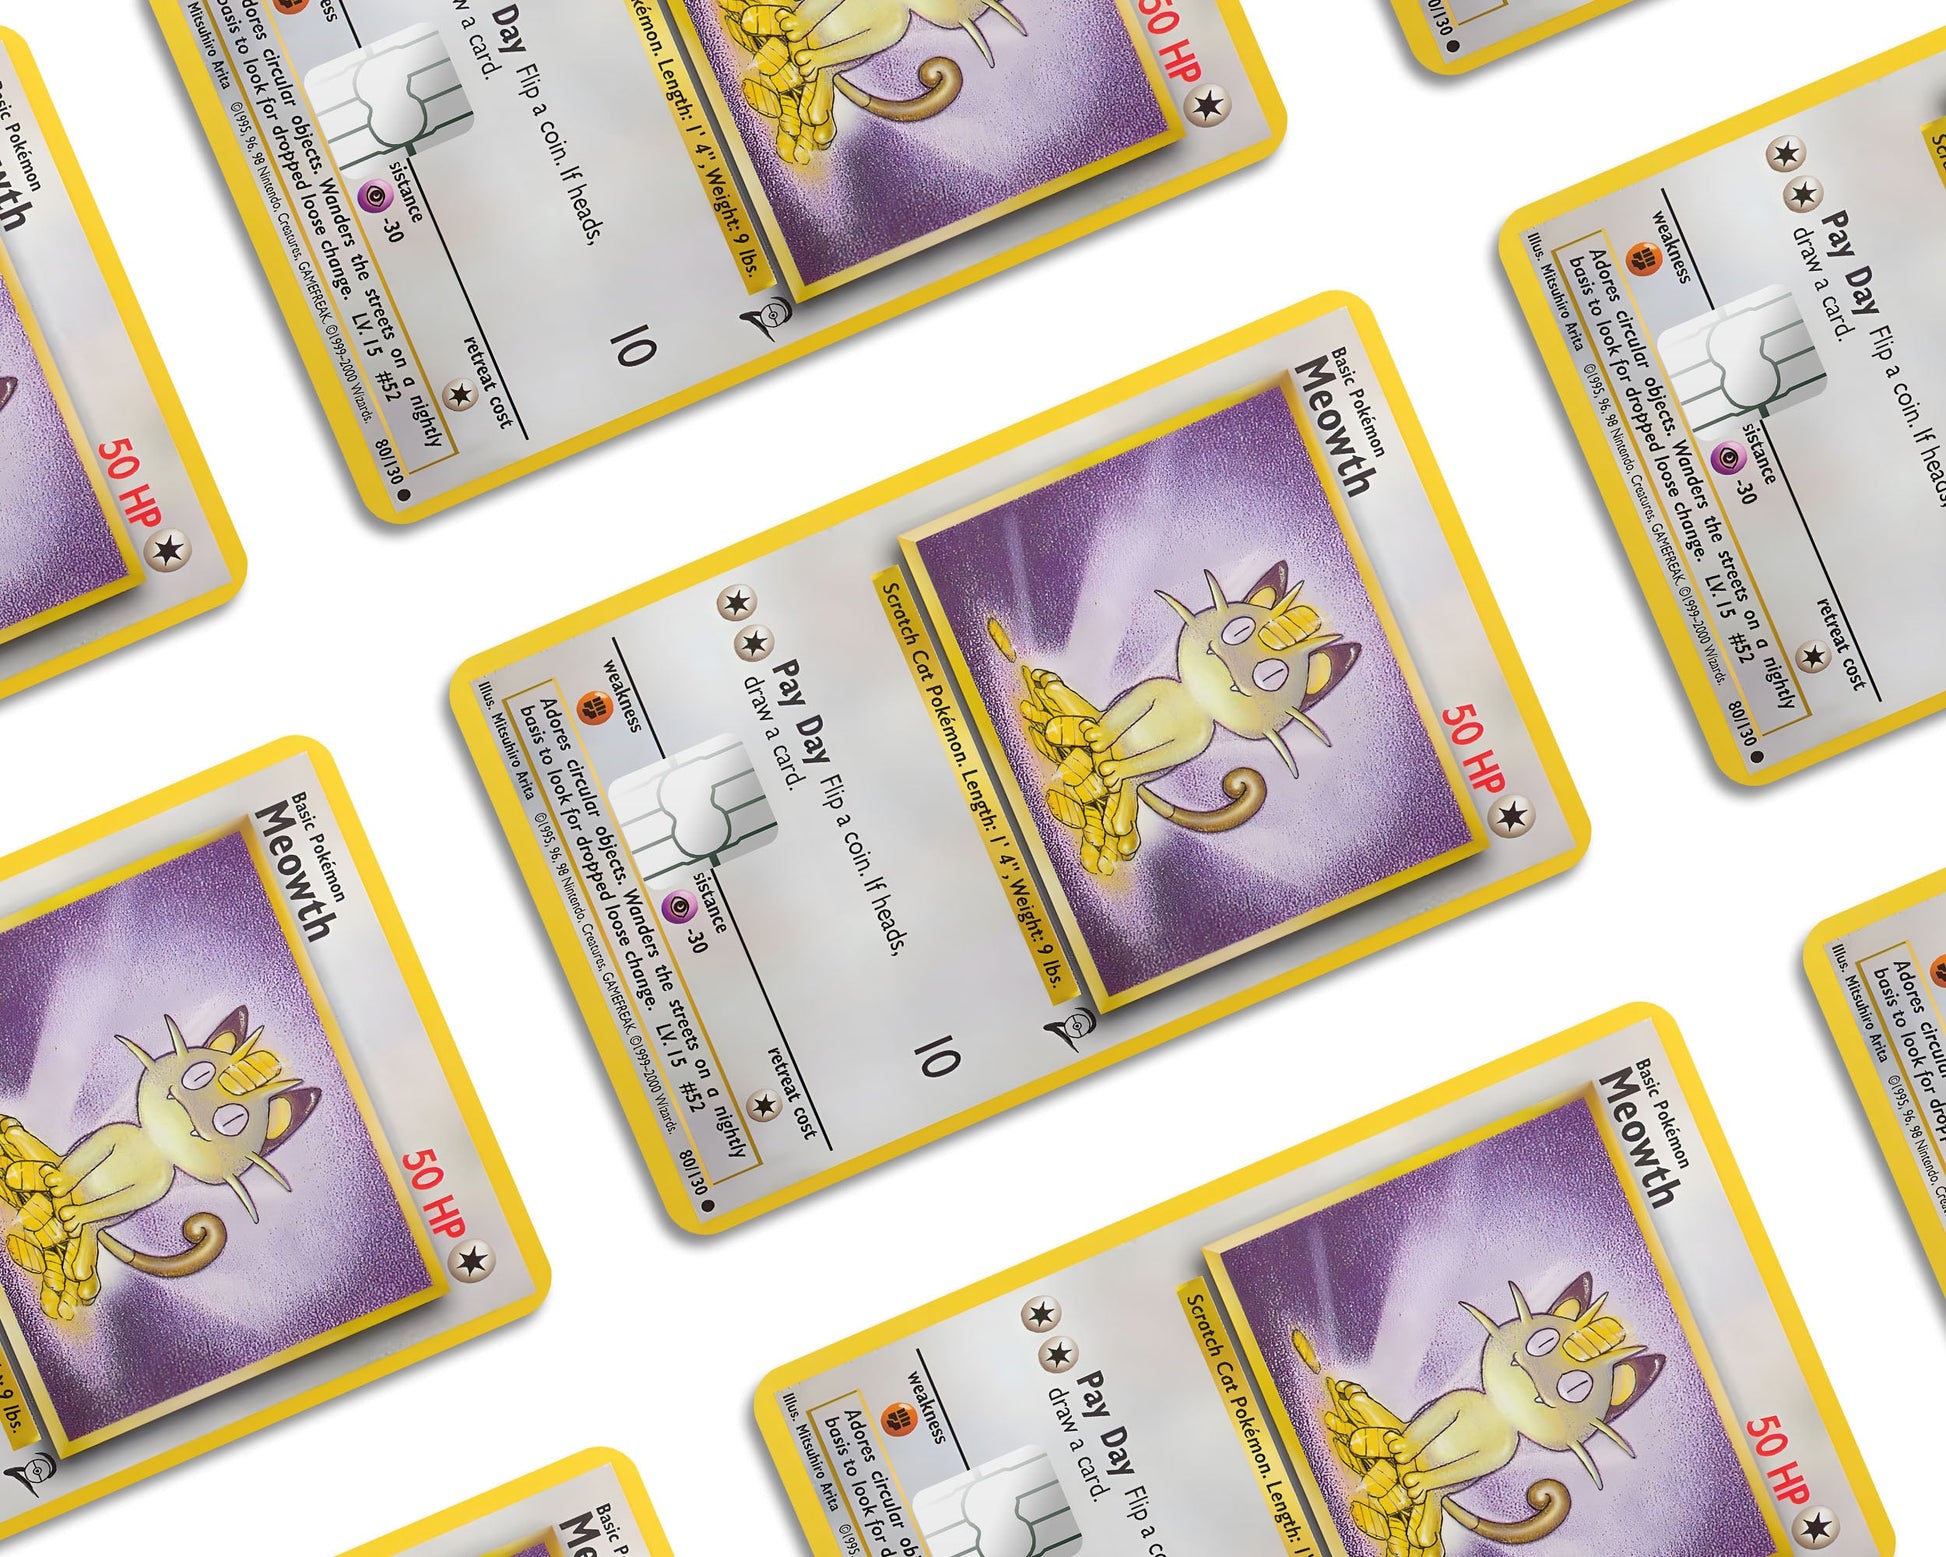 Meowth Pokemon Debit Card Skin - Wrapime - Anime Skins and Styles